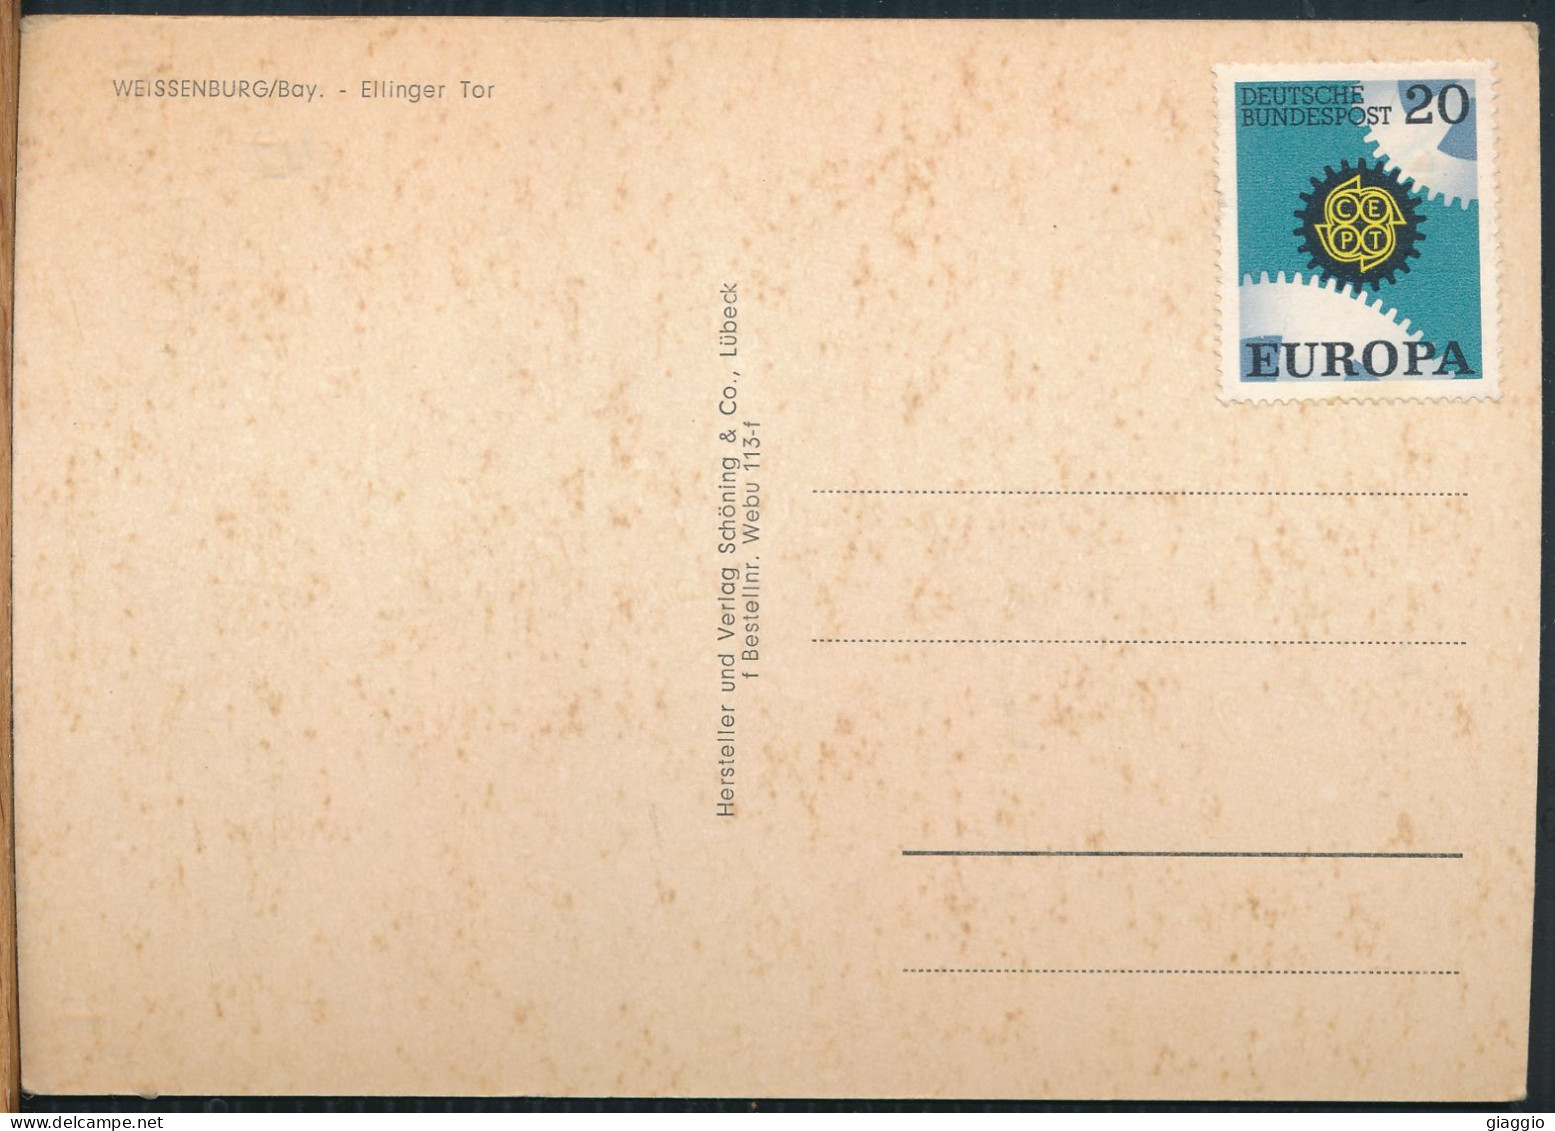 °°° 31086 - GERMANY - WEISSENBURG - ELLINGER TOR -  With Stamps °°° - Weissenburg